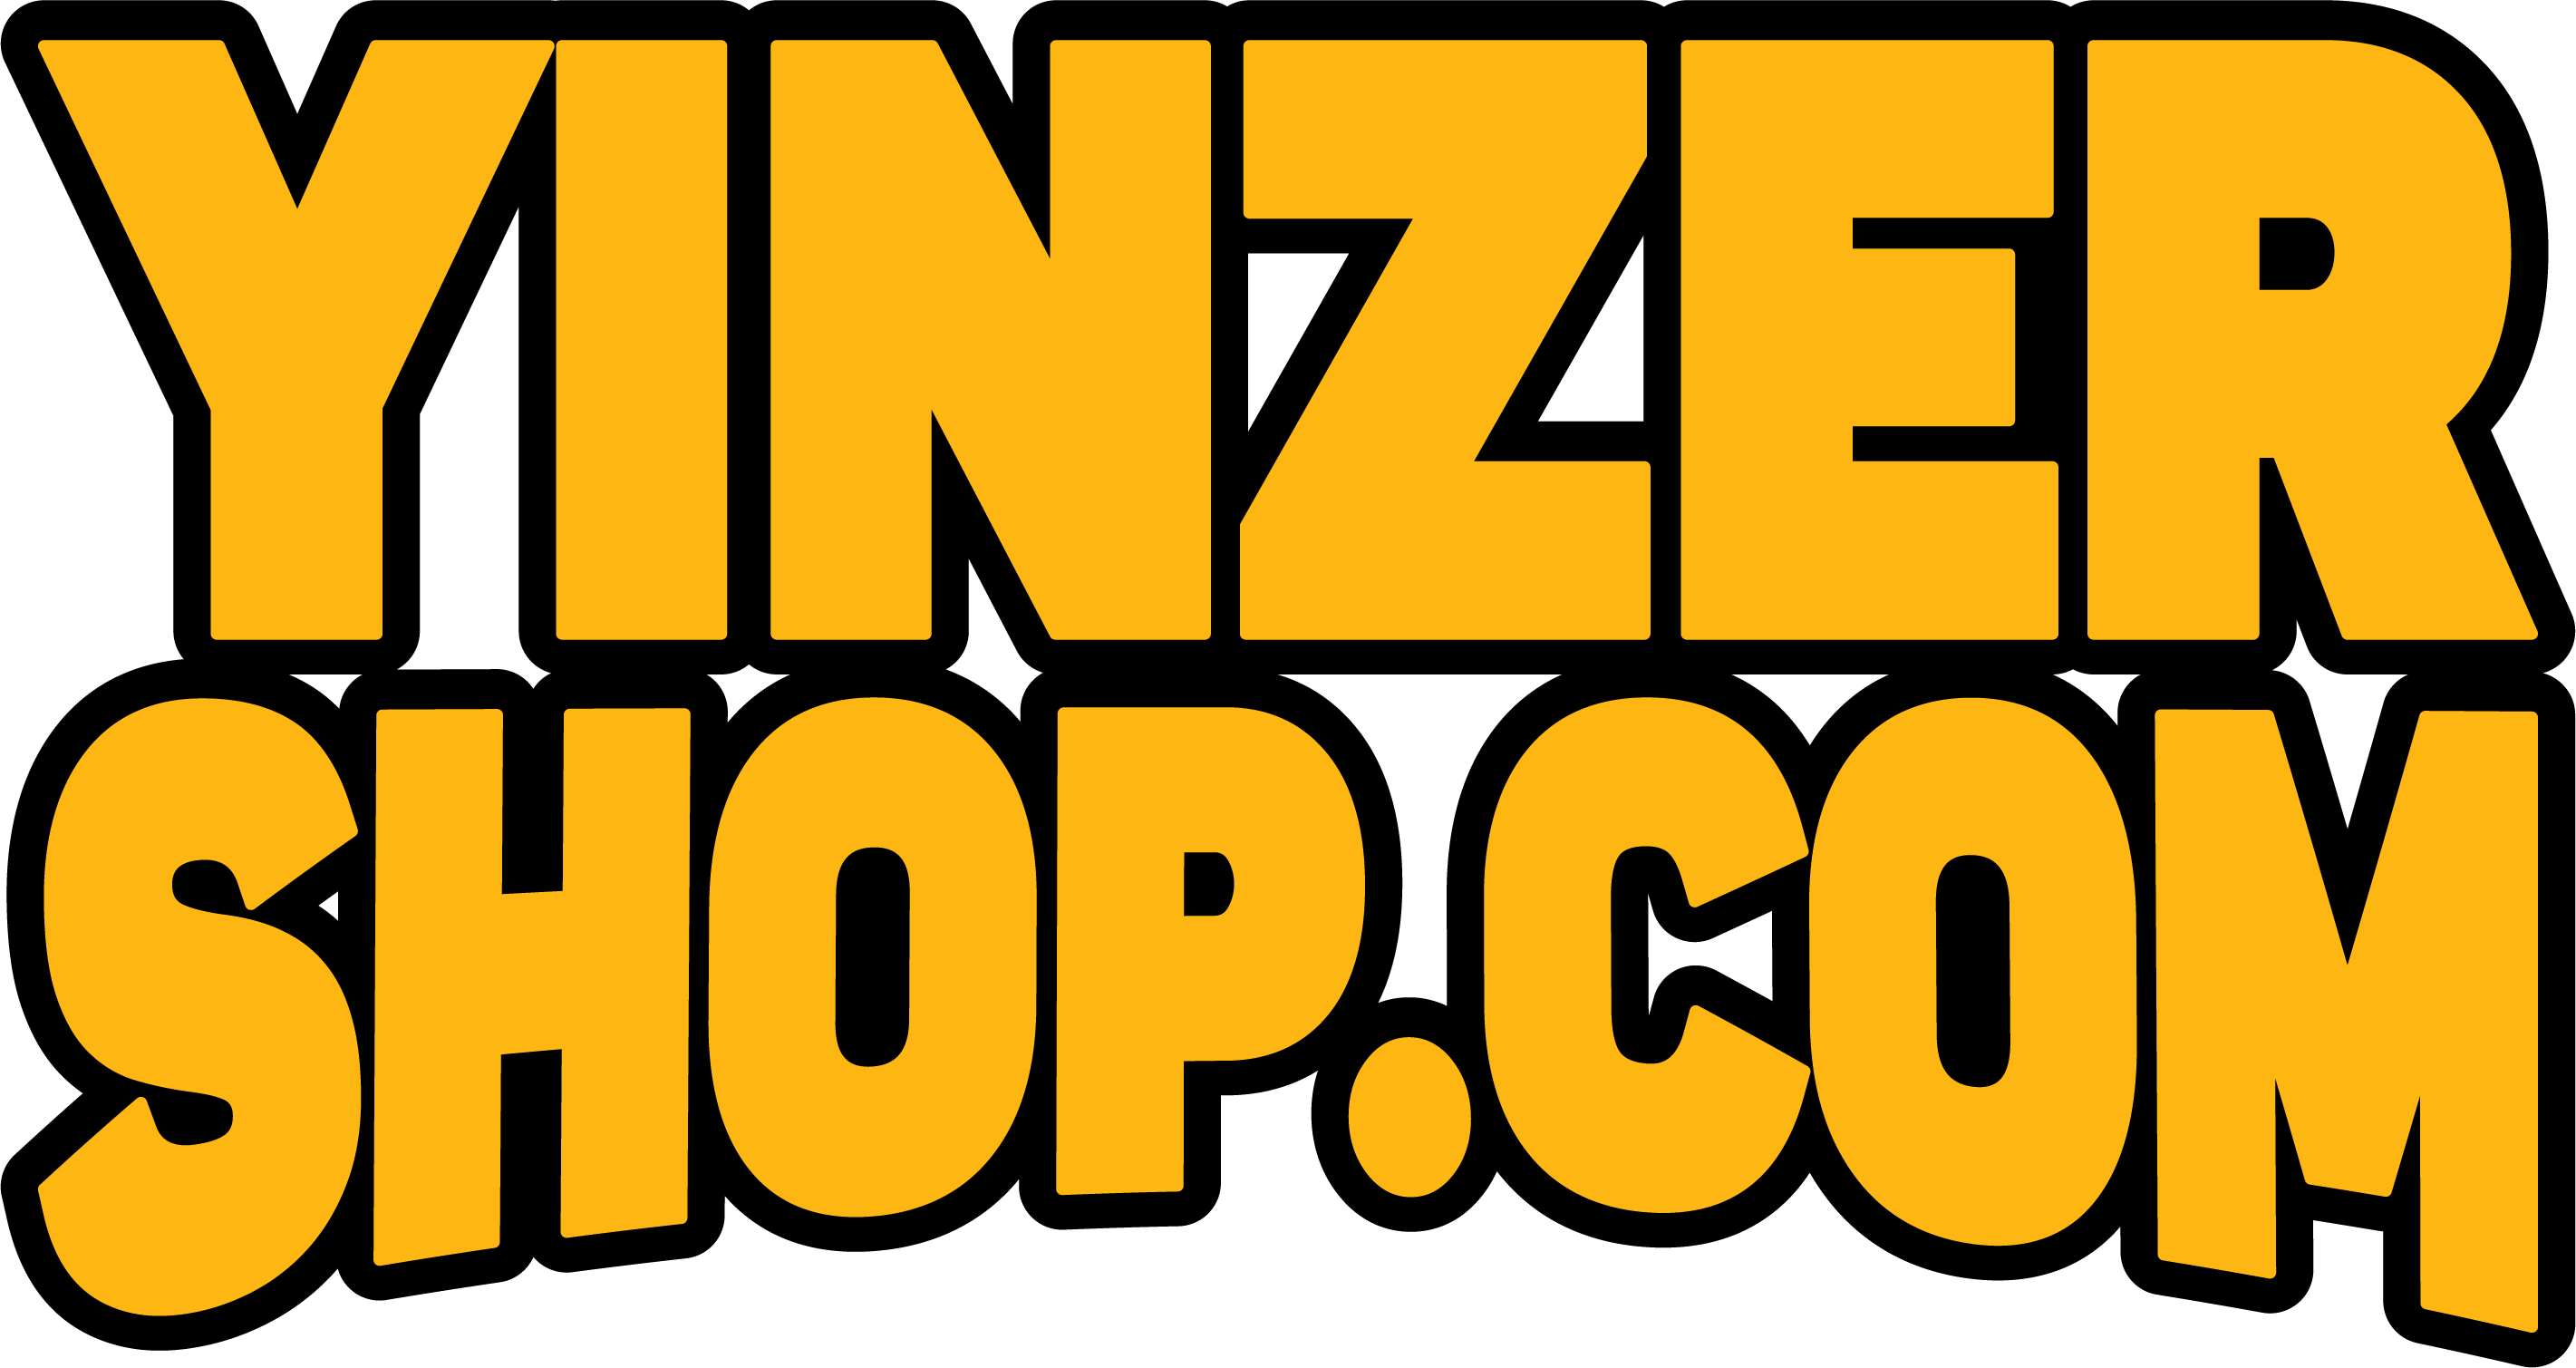 HEINZ SPORTS CLOTHES WHOLESALE, Online Shop